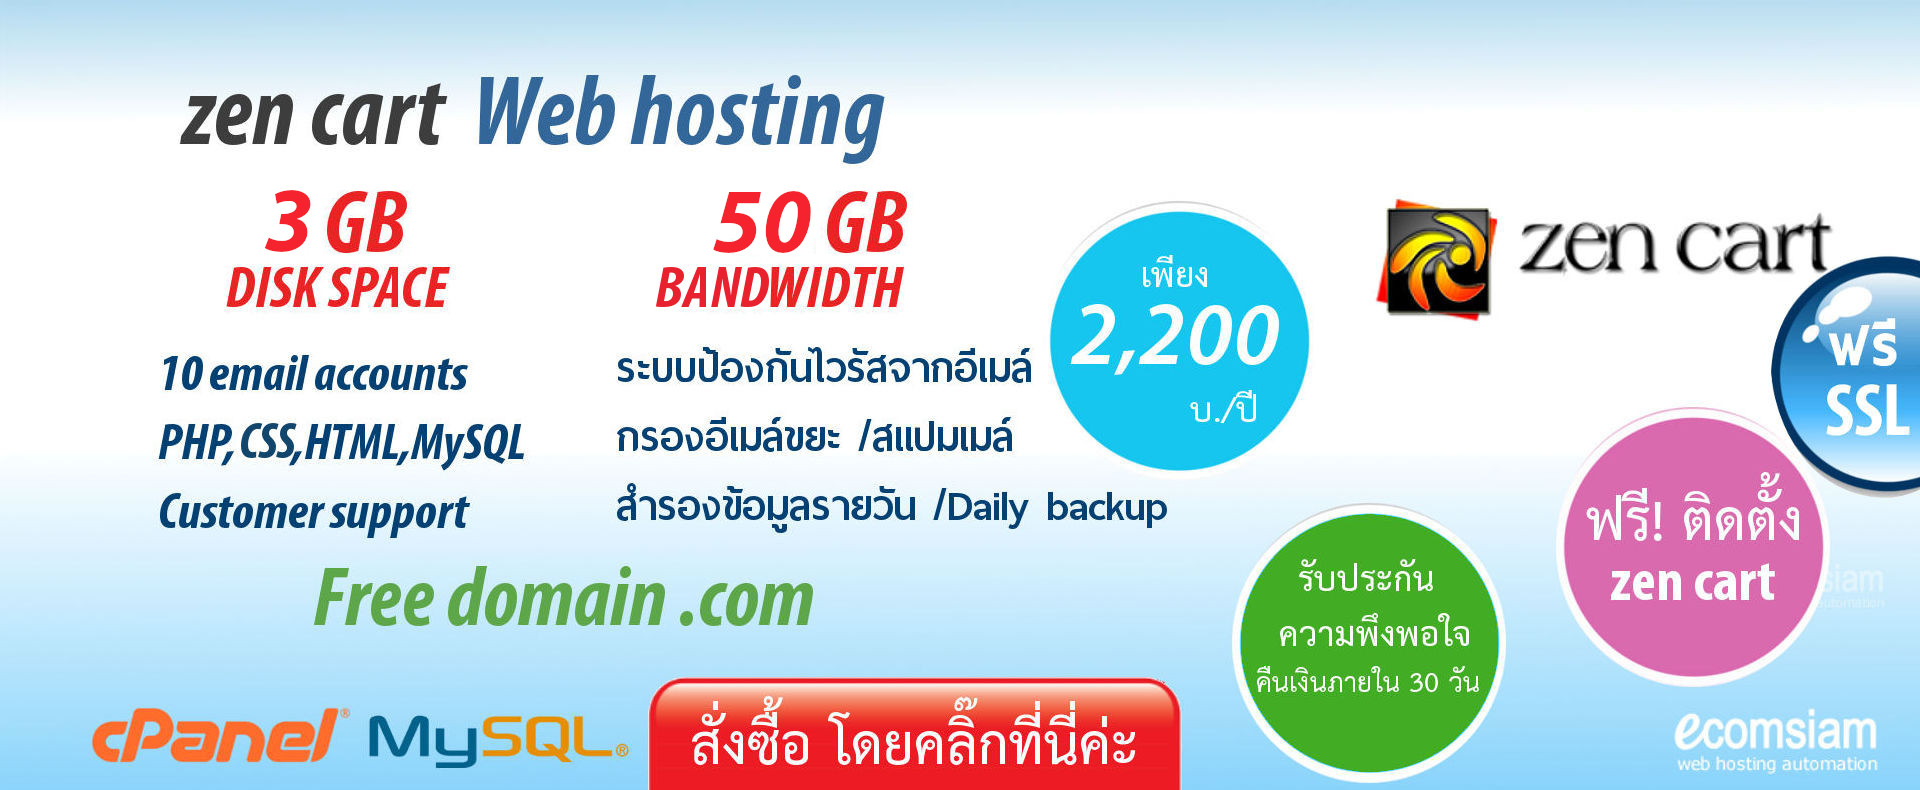 เว็บโฮสติ้ง ฟรีโดเมนเนม - zencart web hosting thailand ฟรีโดเมน - free domain-zencart hosting banner